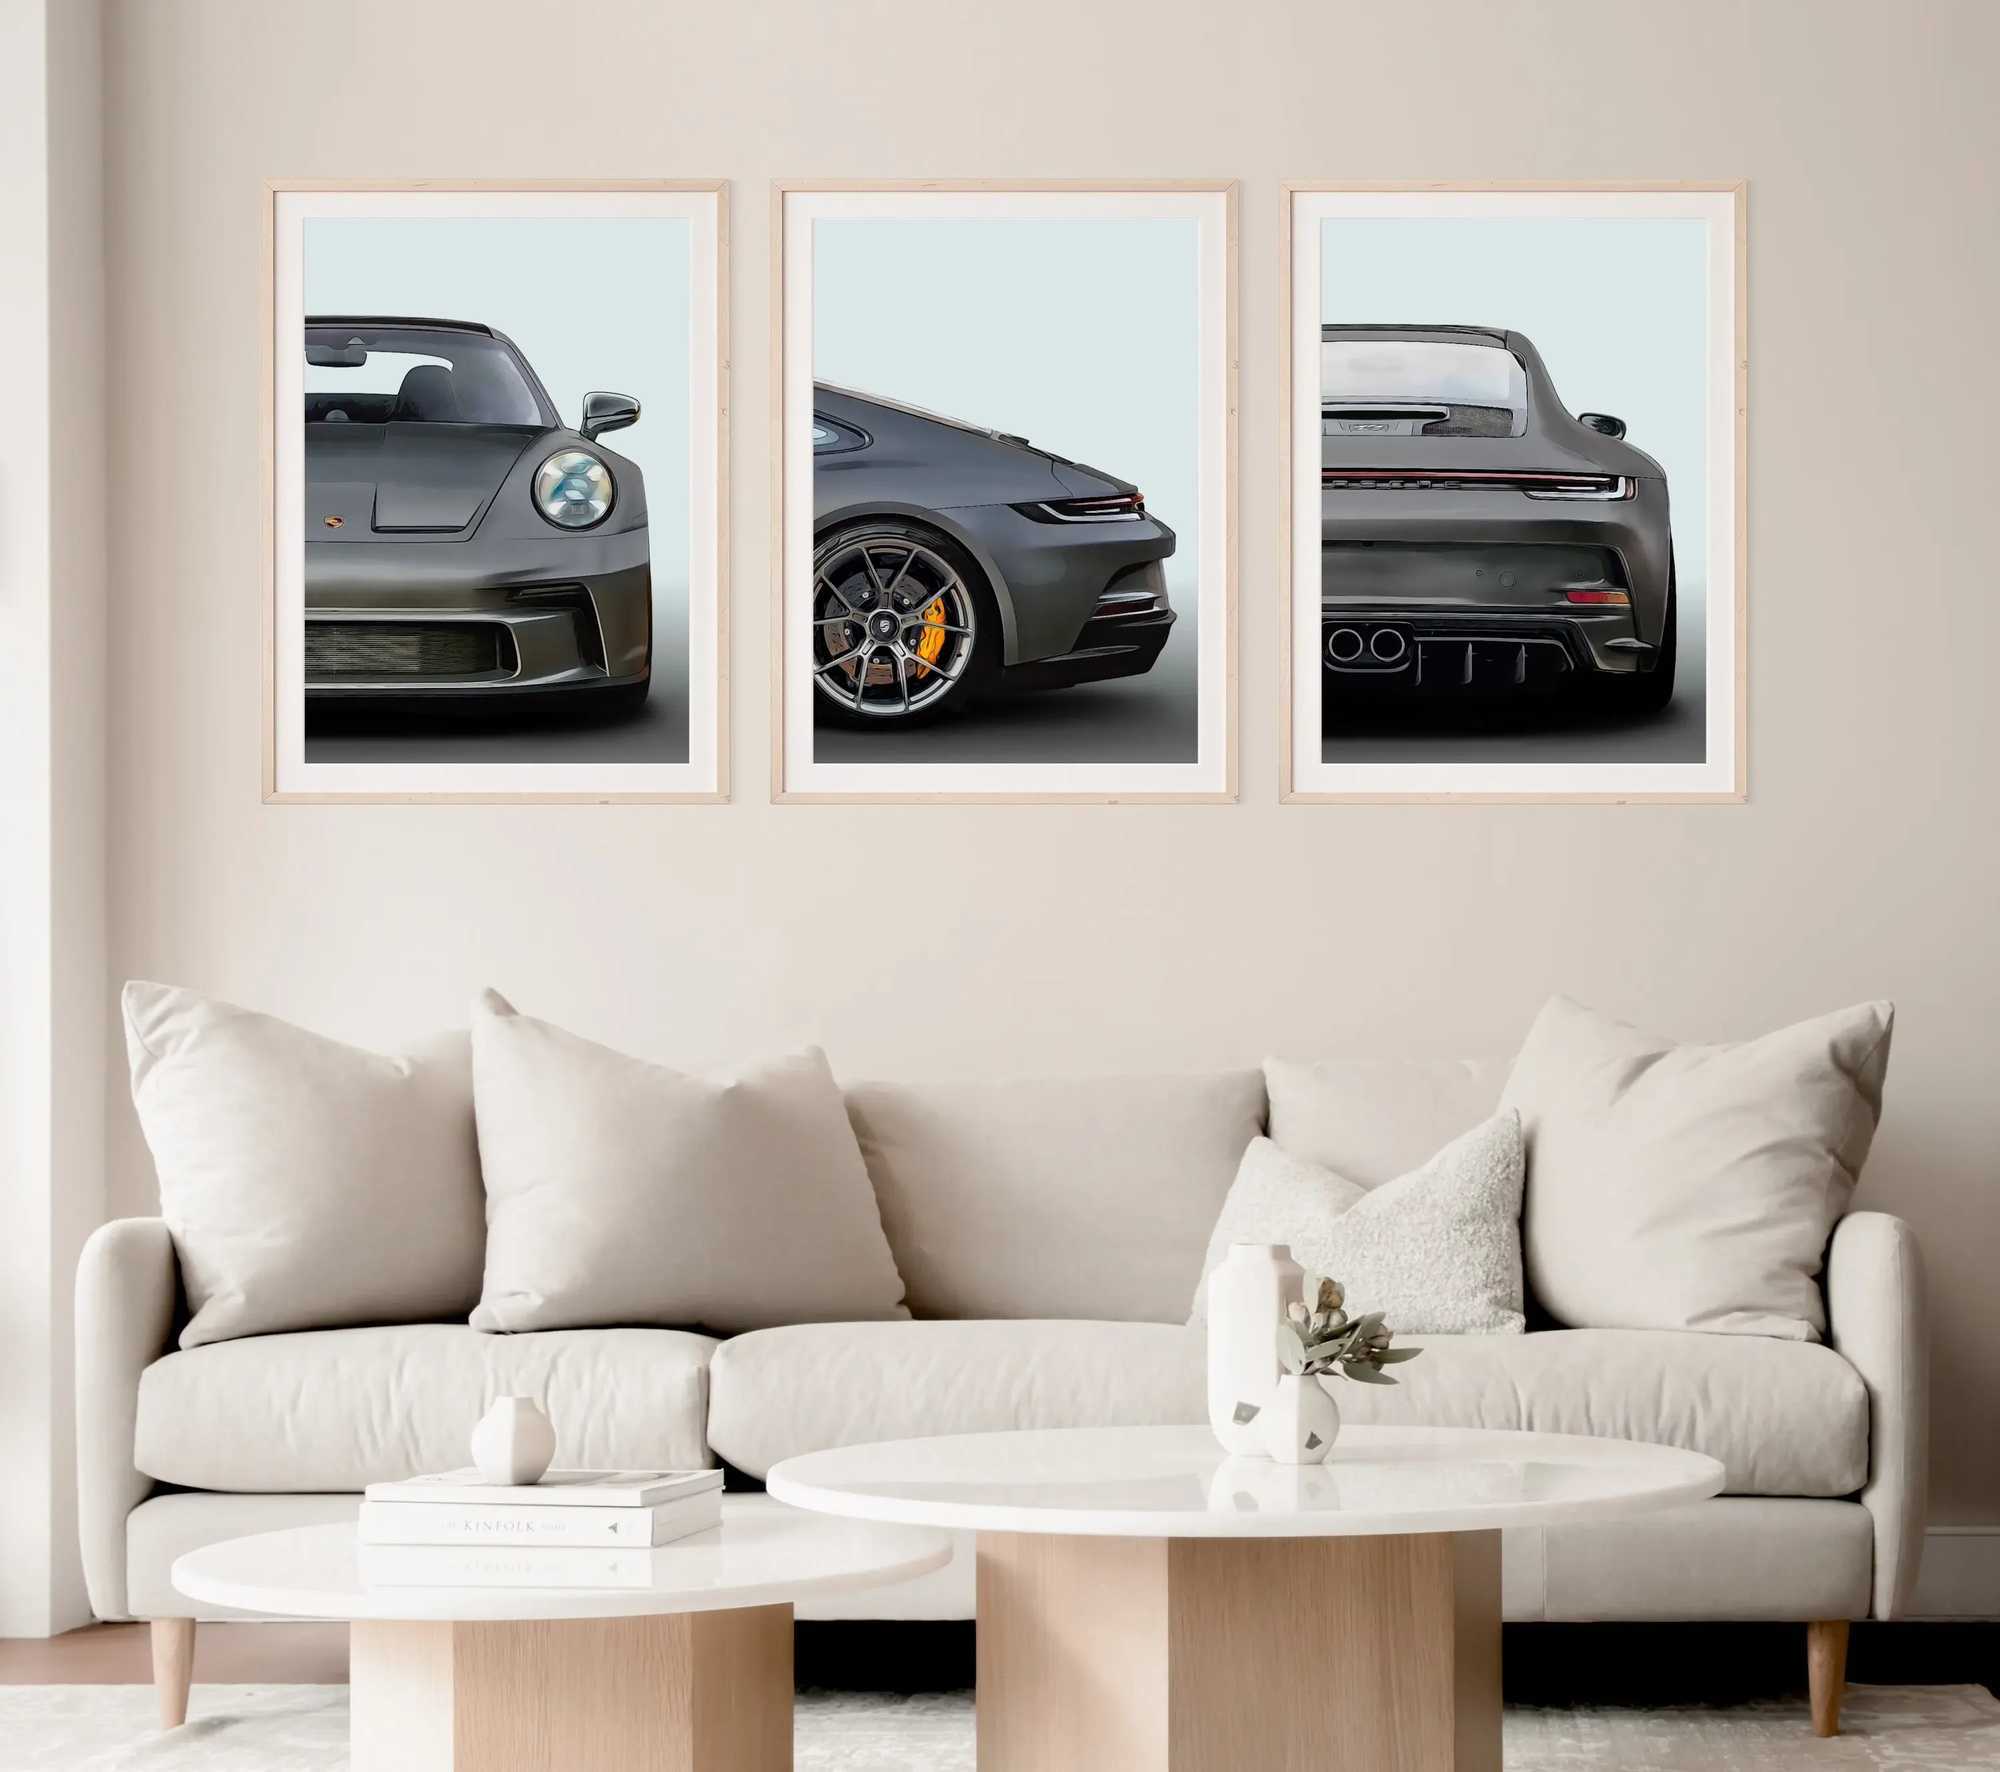 Fonds d'écran Classic Pop Three Piece Wall Art 911 GT3 Supercar HD Toivas Affiche Impression de chambre maison Décoration de salon J240505